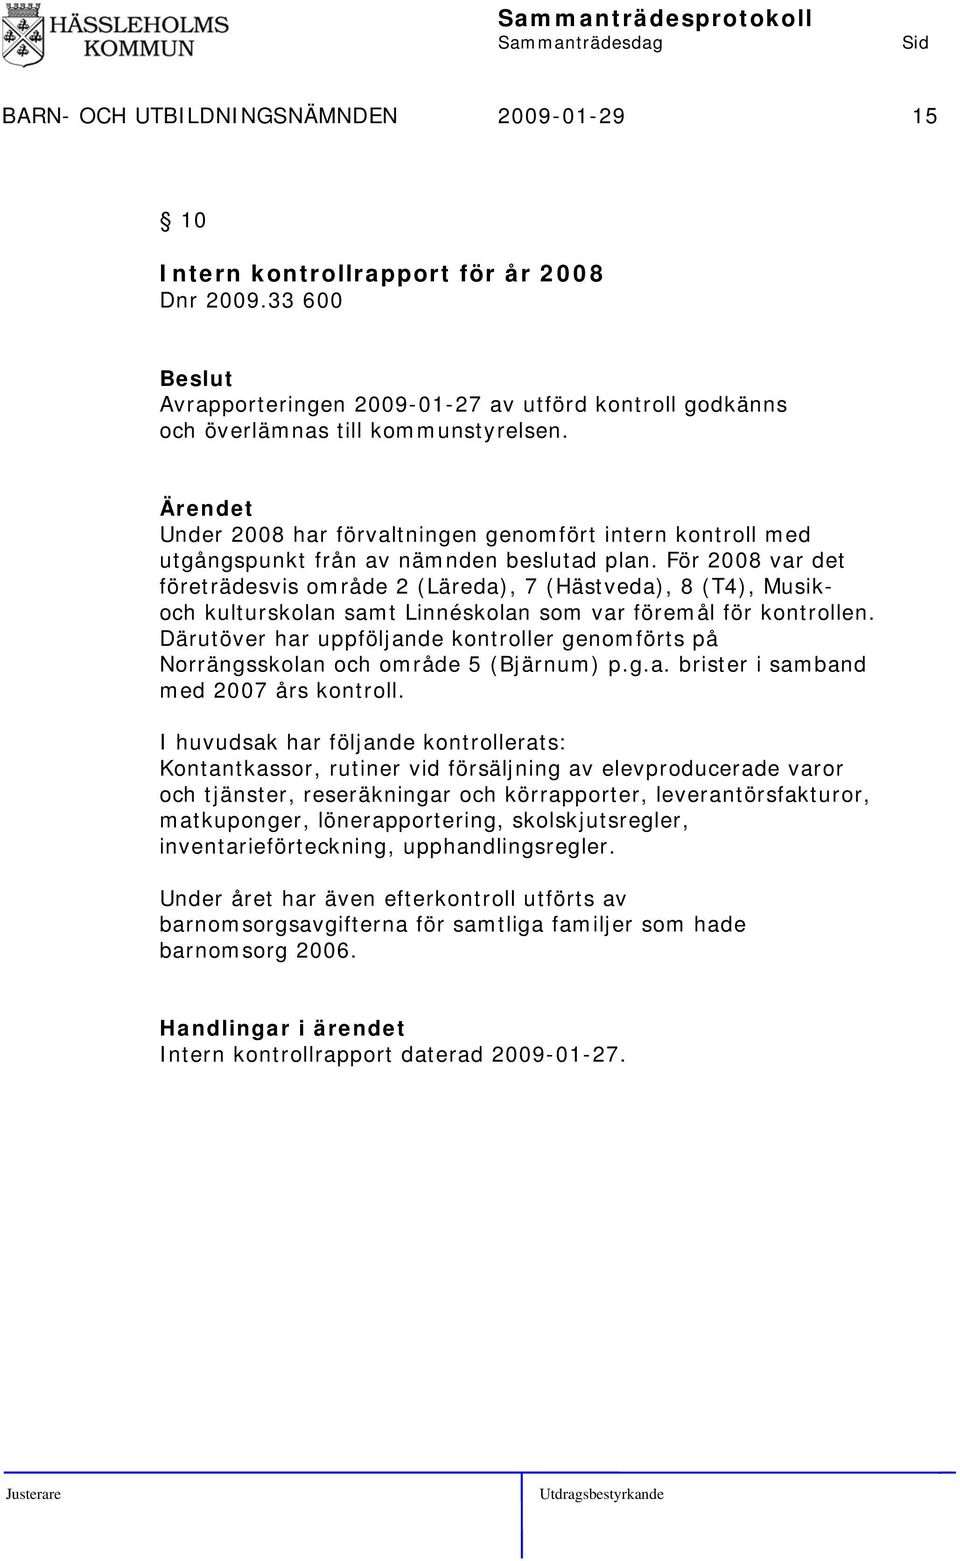 För 2008 var det företrädesvis område 2 (Läreda), 7 (Hästveda), 8 (T4), Musikoch kulturskolan samt Linnéskolan som var föremål för kontrollen.